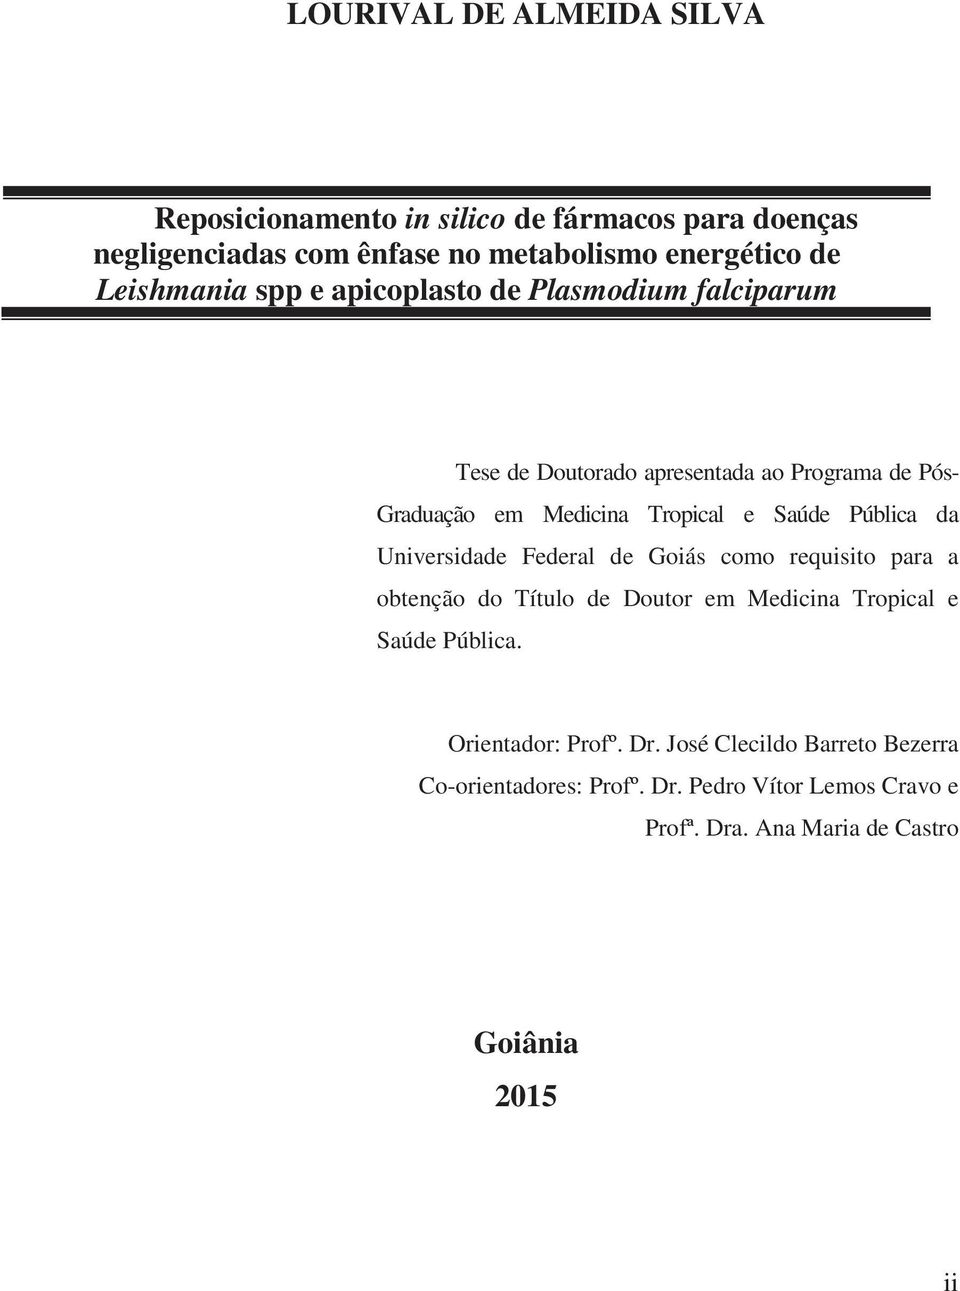 Saúde Pública da Universidade Federal de Goiás como requisito para a obtenção do Título de Doutor em Medicina Tropical e Saúde Pública.